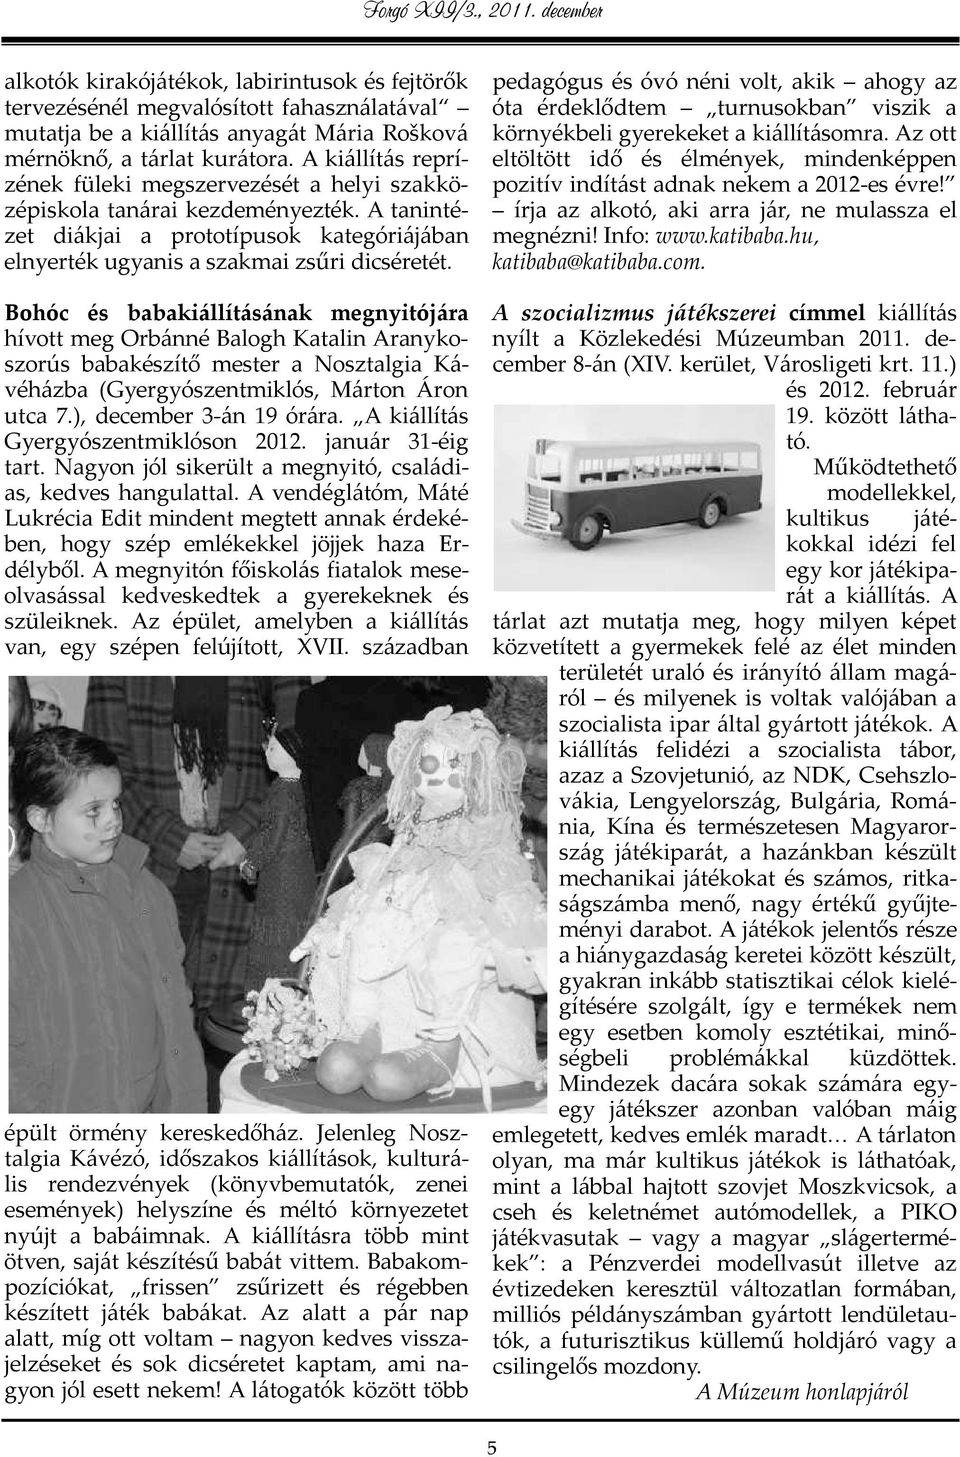 Bohóc és babakiállításának megnyitójára hívott meg Orbánné Balogh Katalin Aranykoszorús babakészítő mester a Nosztalgia Kávéházba (Gyergyószentmiklós, Márton Áron utca 7.), december 3-án 19 órára.